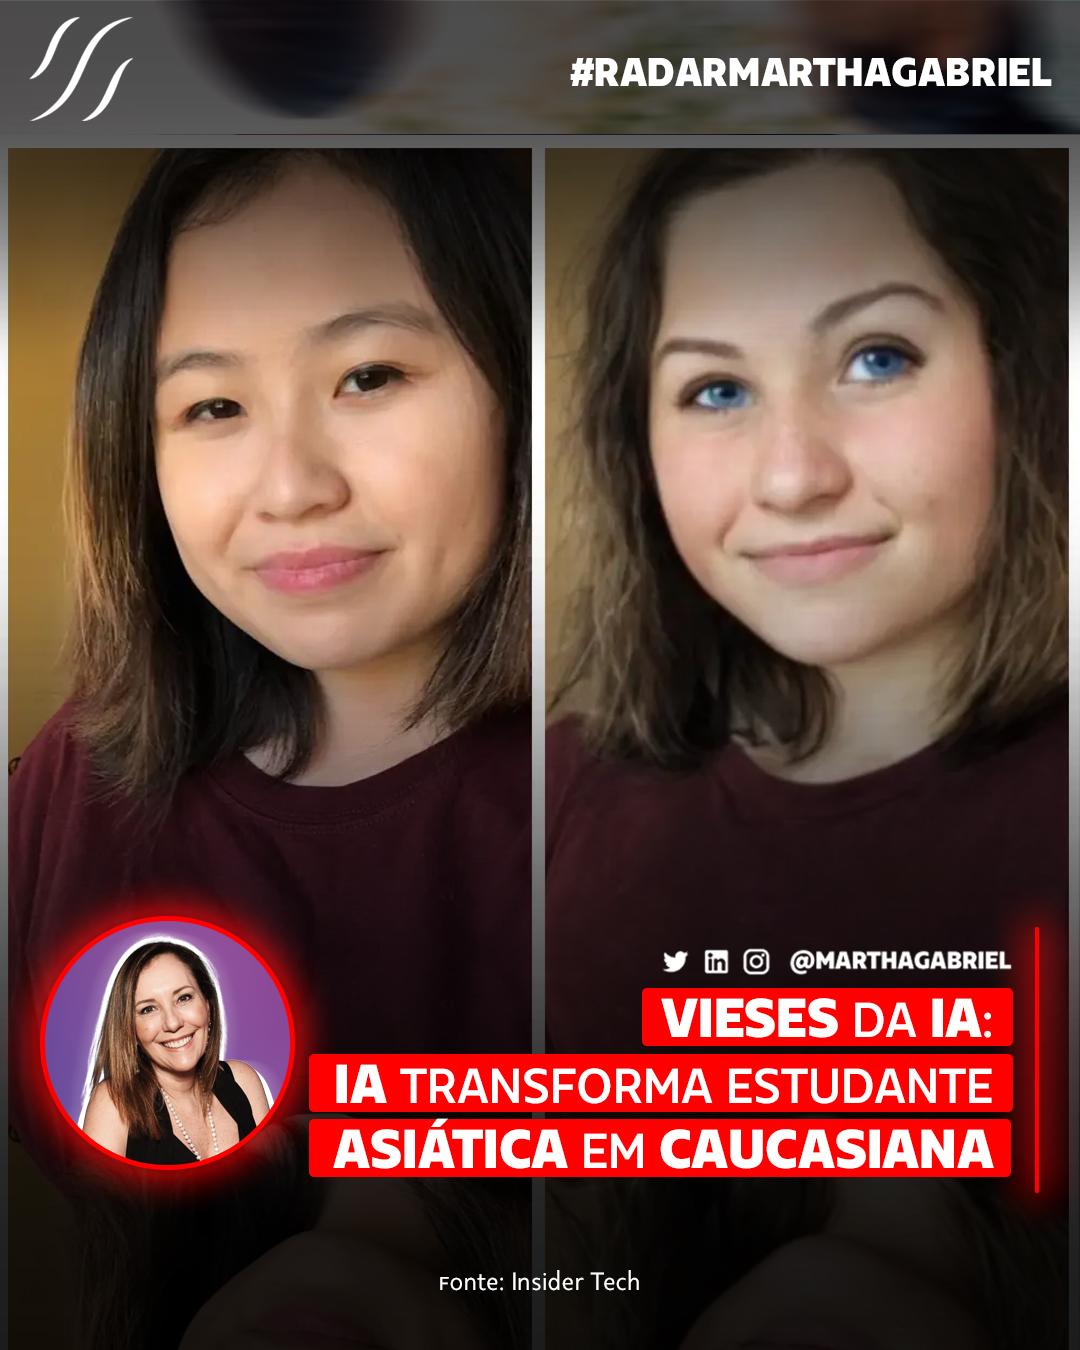 Vieses da Inteligência Artificial: IA transforma estudante asiática em caucasiana